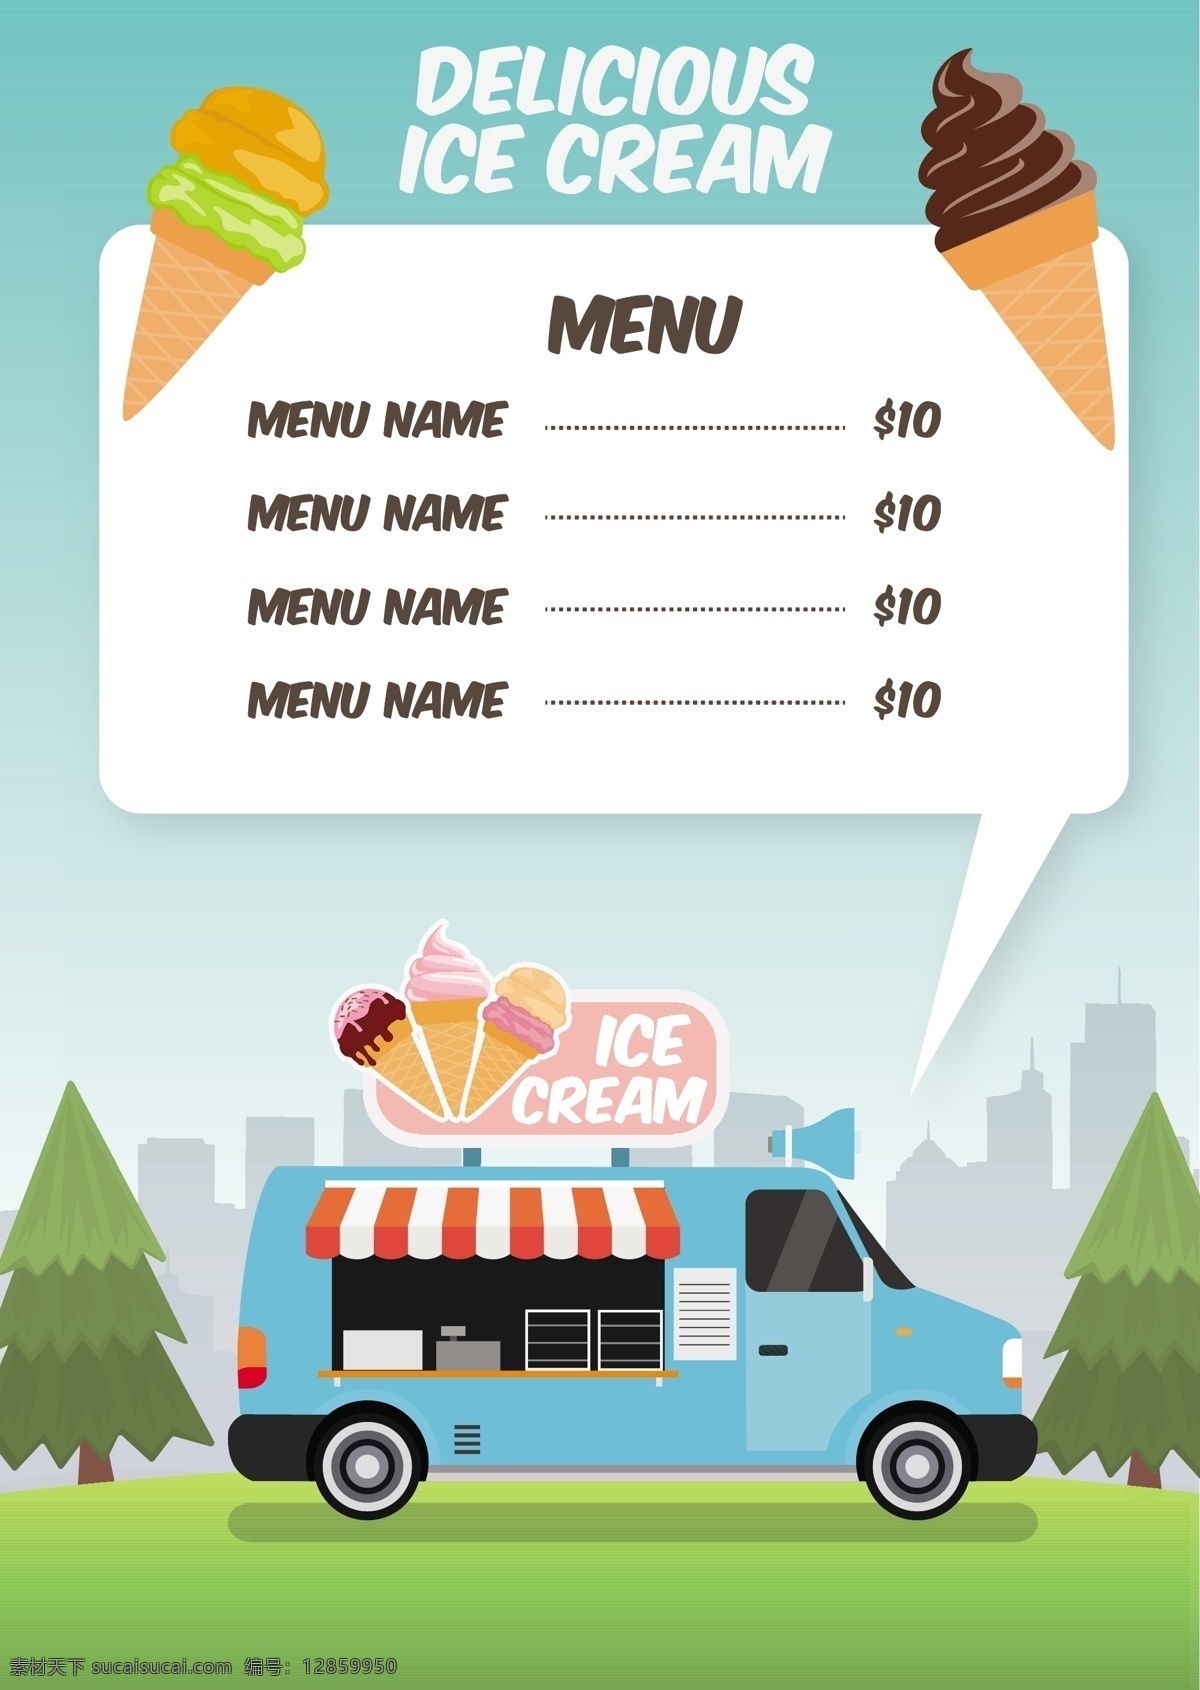 冰淇淋车菜单 食品 菜单 模板 餐厅 可爱 冰淇淋 卡车 彩色 厨师 平面 烹饪 冰 快餐 街头 现代 运输 平面设计 食物菜单 晚餐